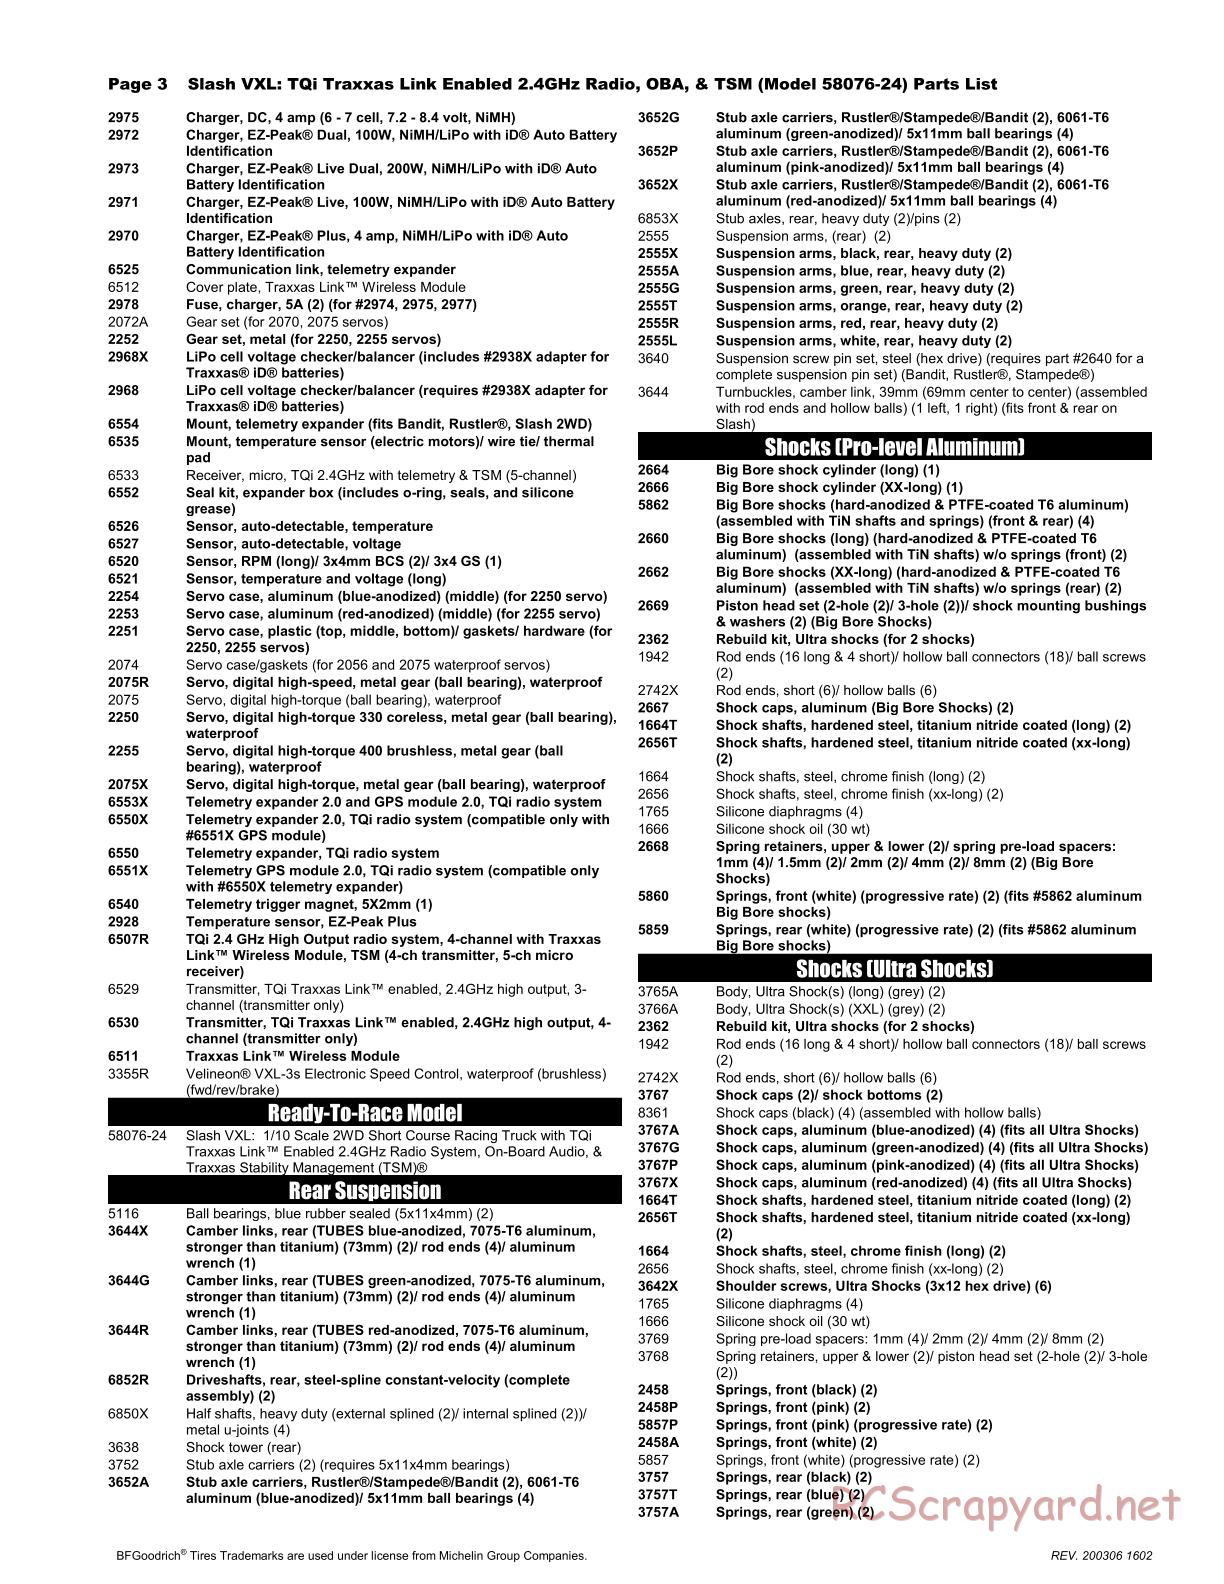 Traxxas - Slash 2WD VXL TSM OBA (2017) - Parts List - Page 3